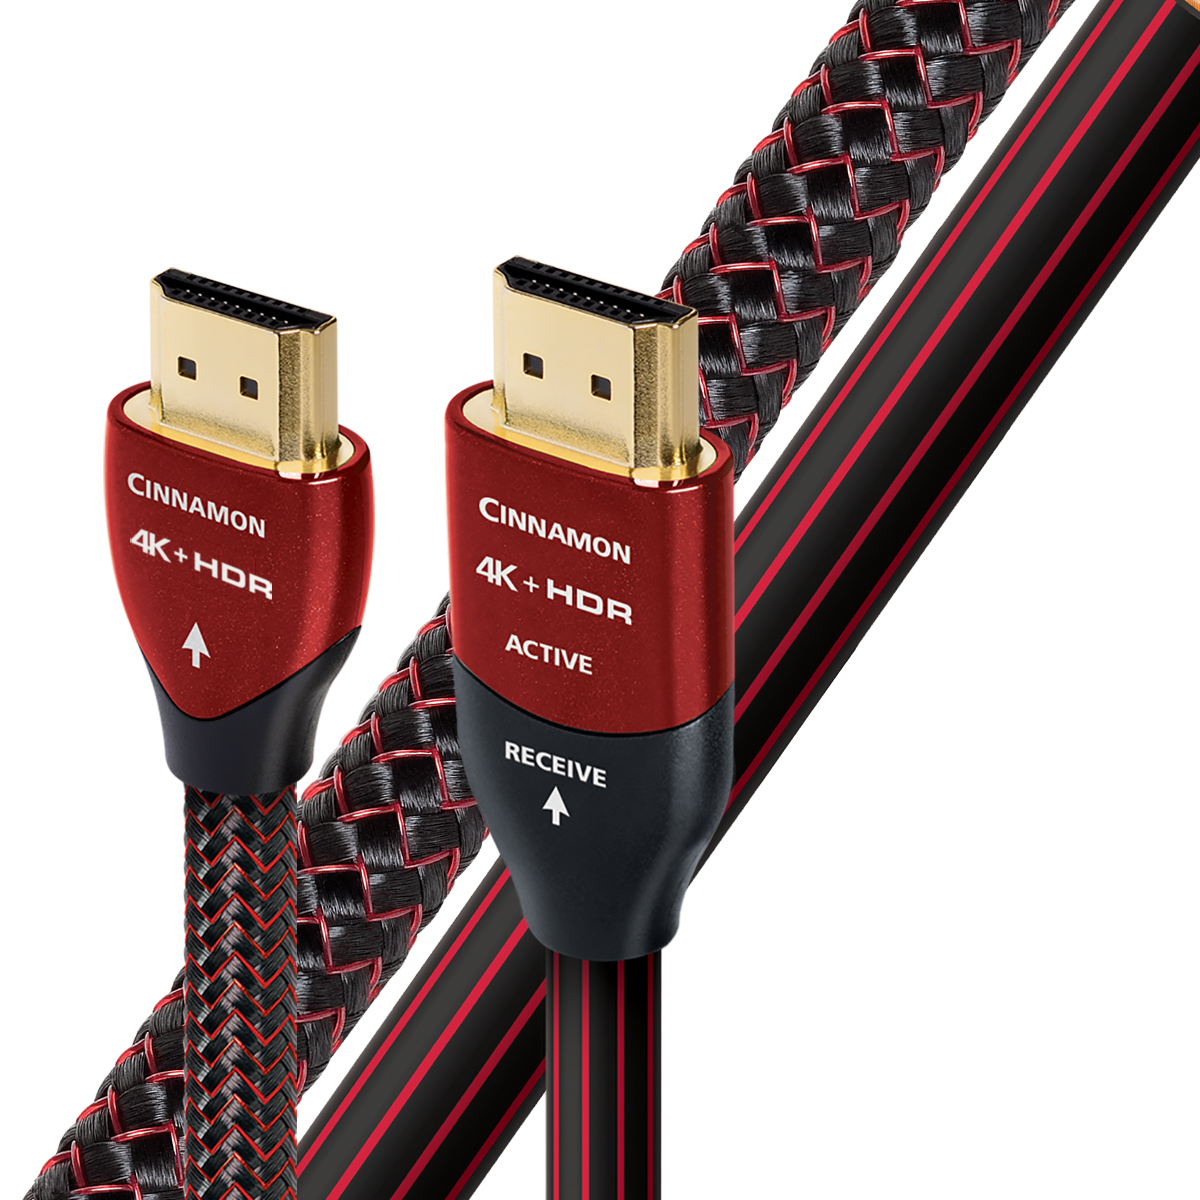 Cinnamon HDMI Cable